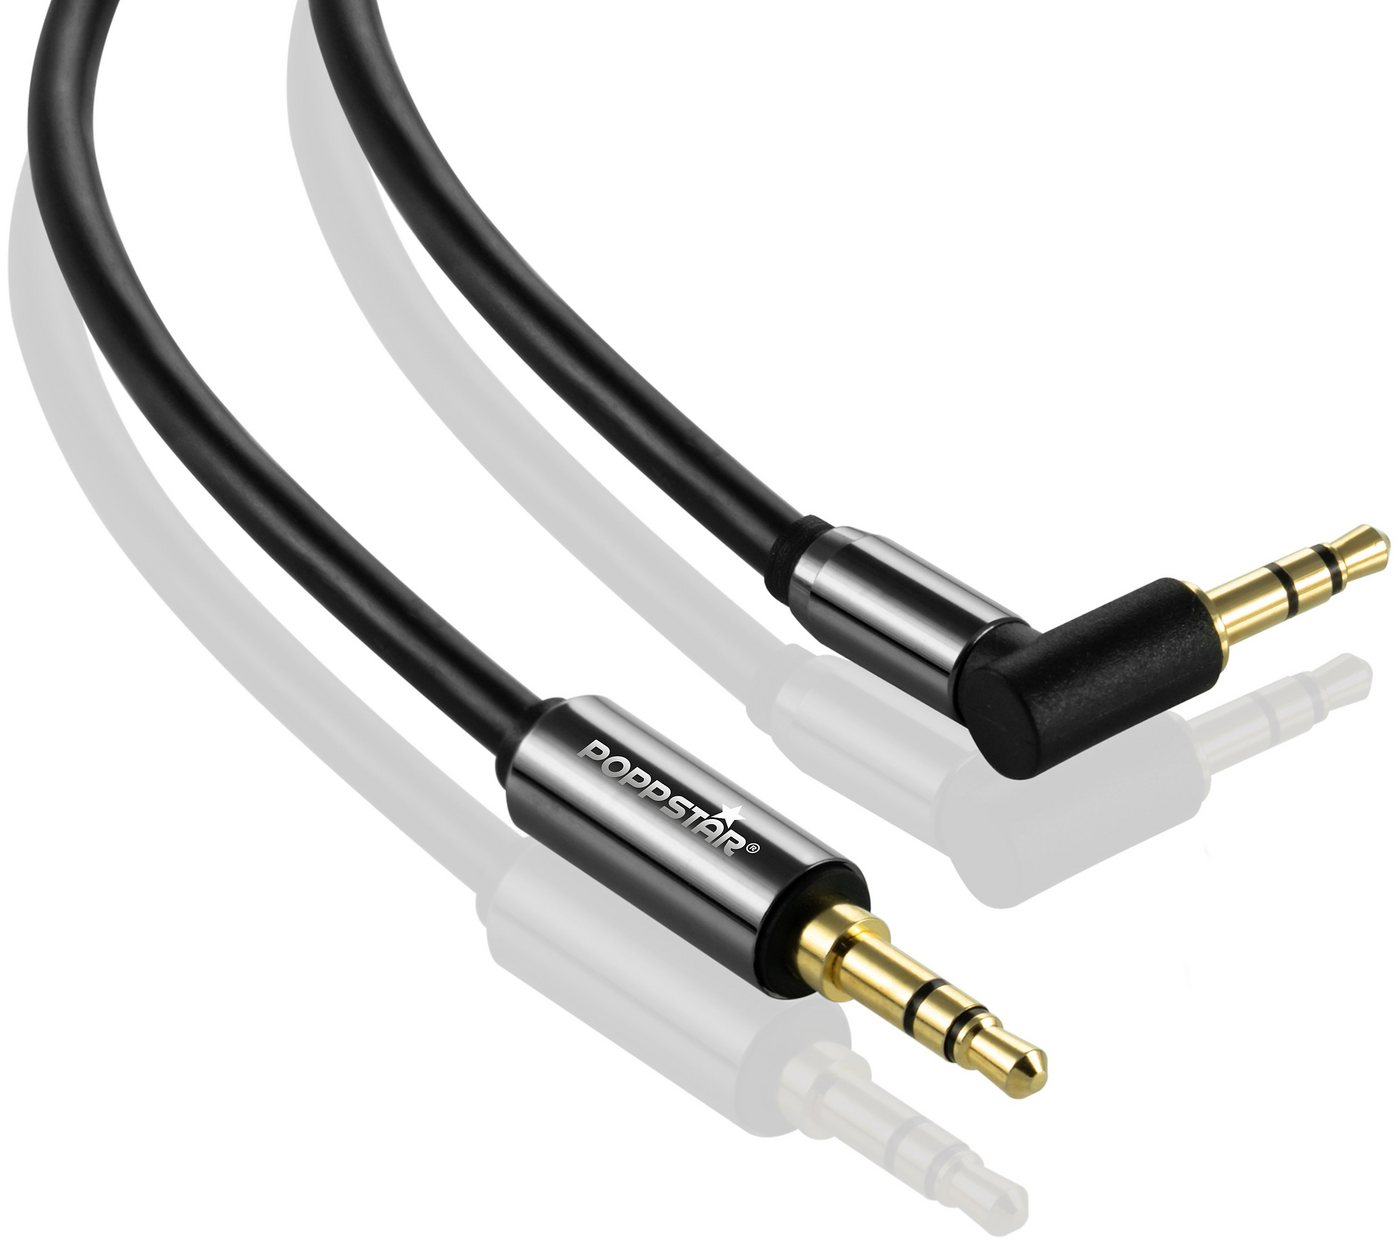 Poppstar Audio-Kabel, (1500 cm), HQ Audio Klinkenkabel von Poppstar